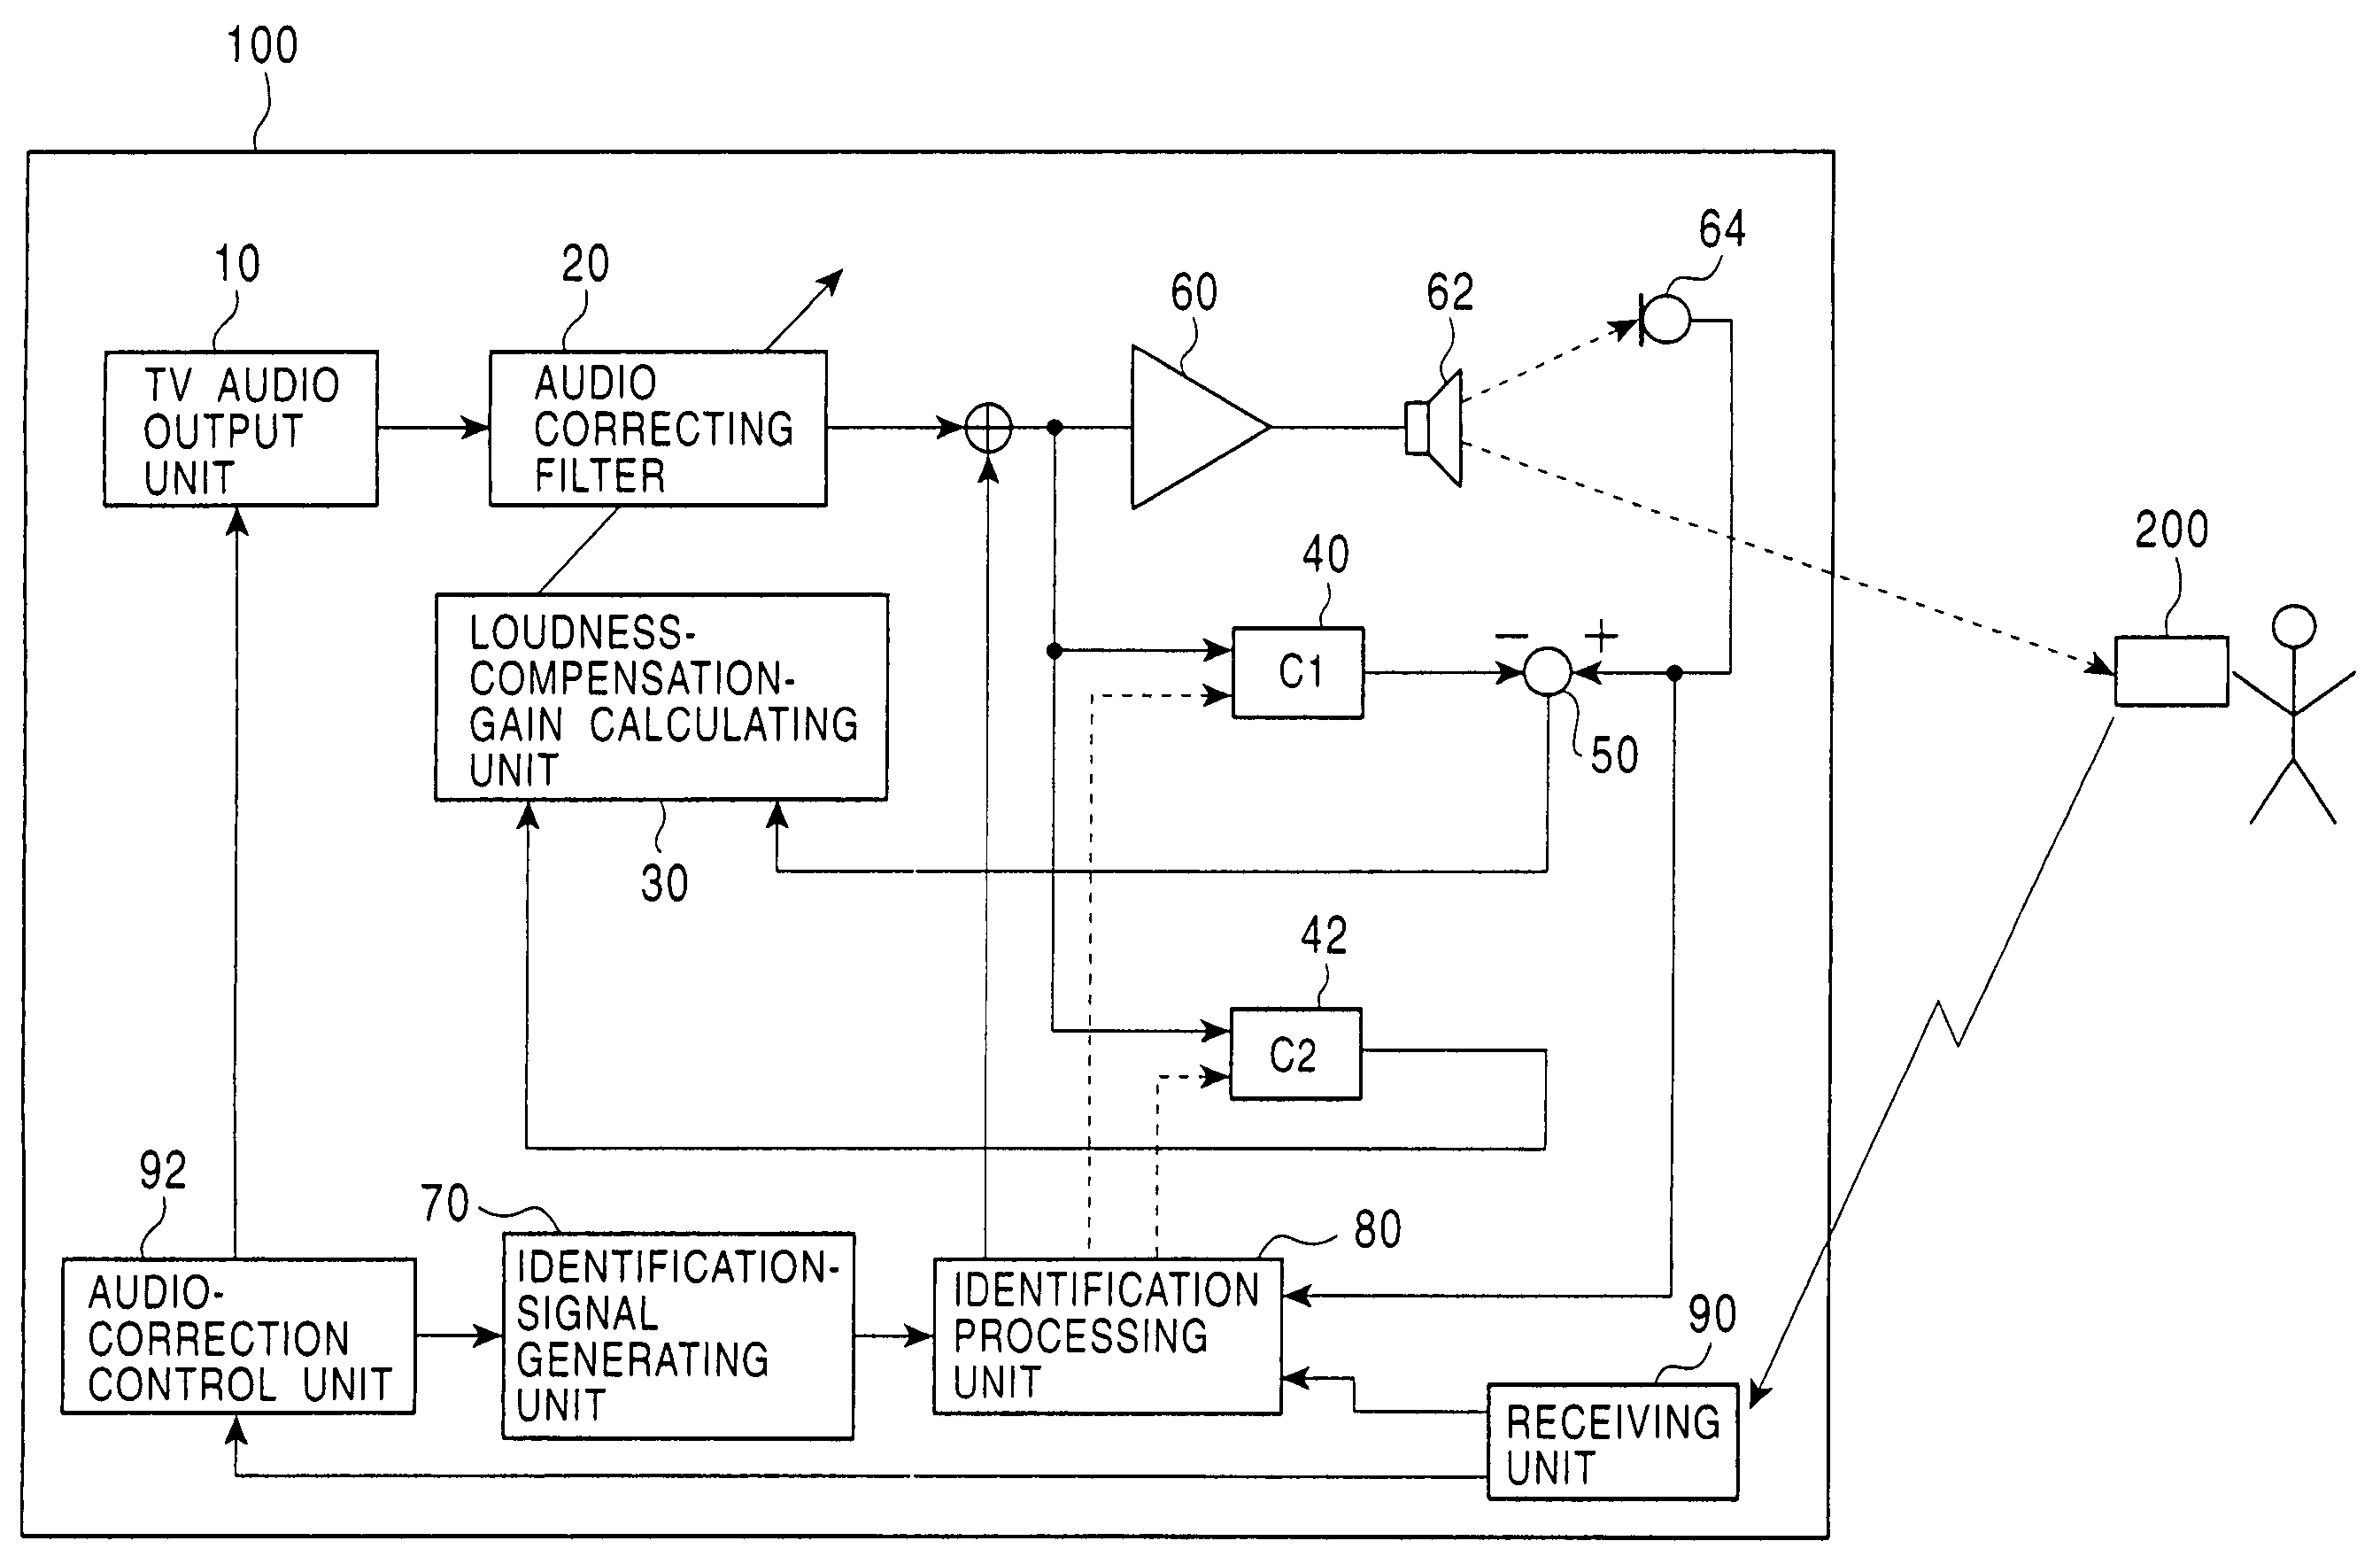 Audio correcting apparatus